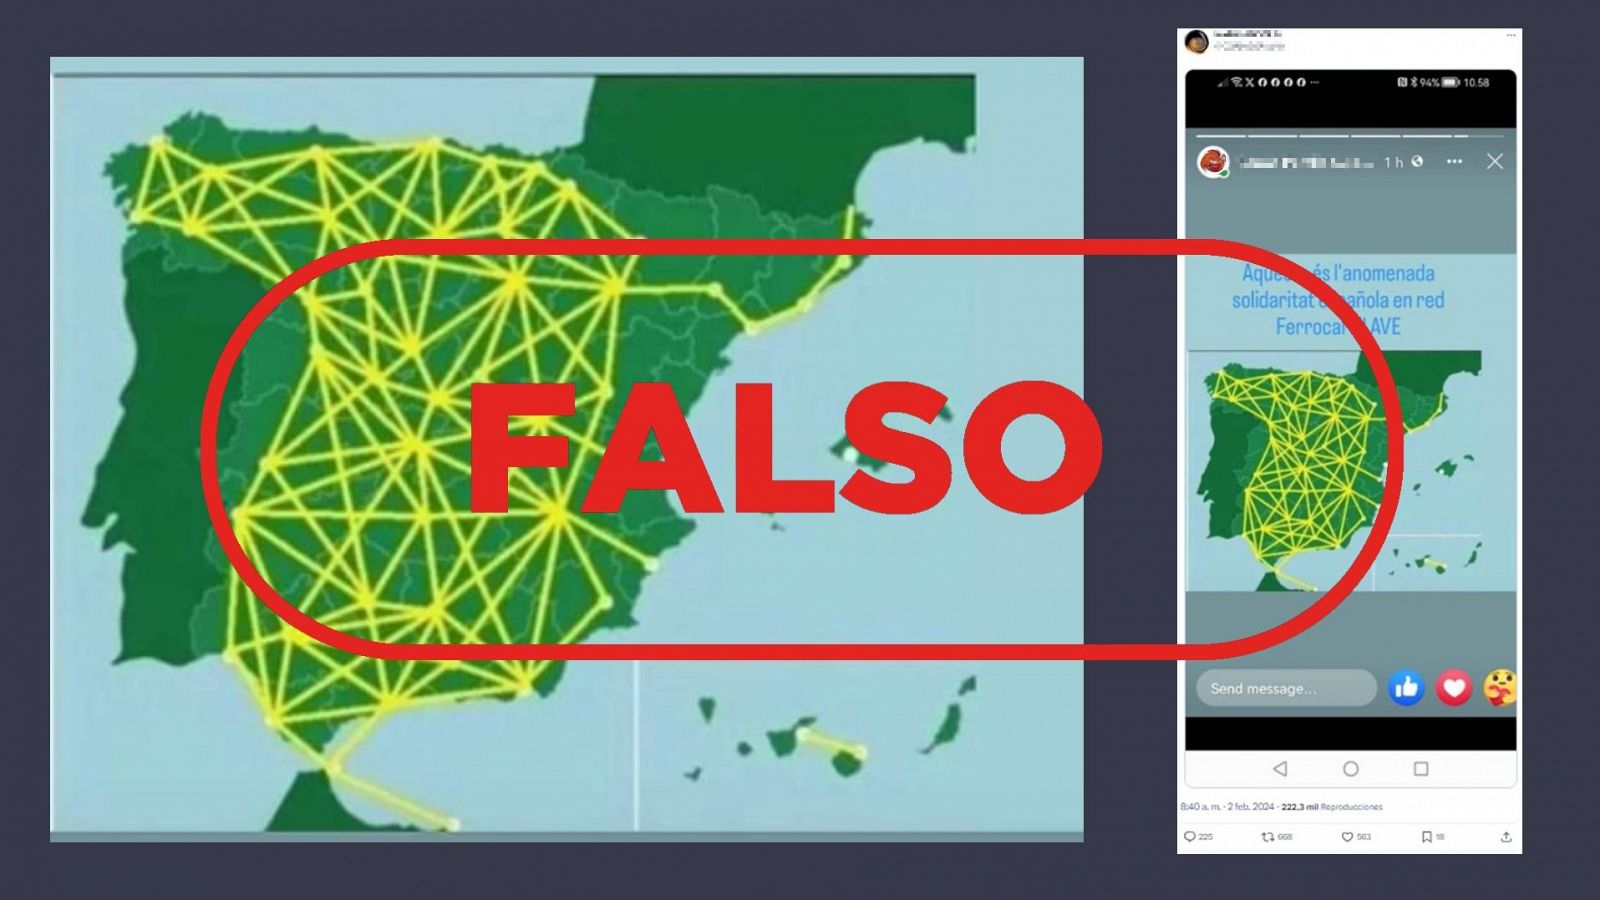 AVE en España: este mapa no muestra las líneas de la red ferroviaria de alta velocidad, es falso